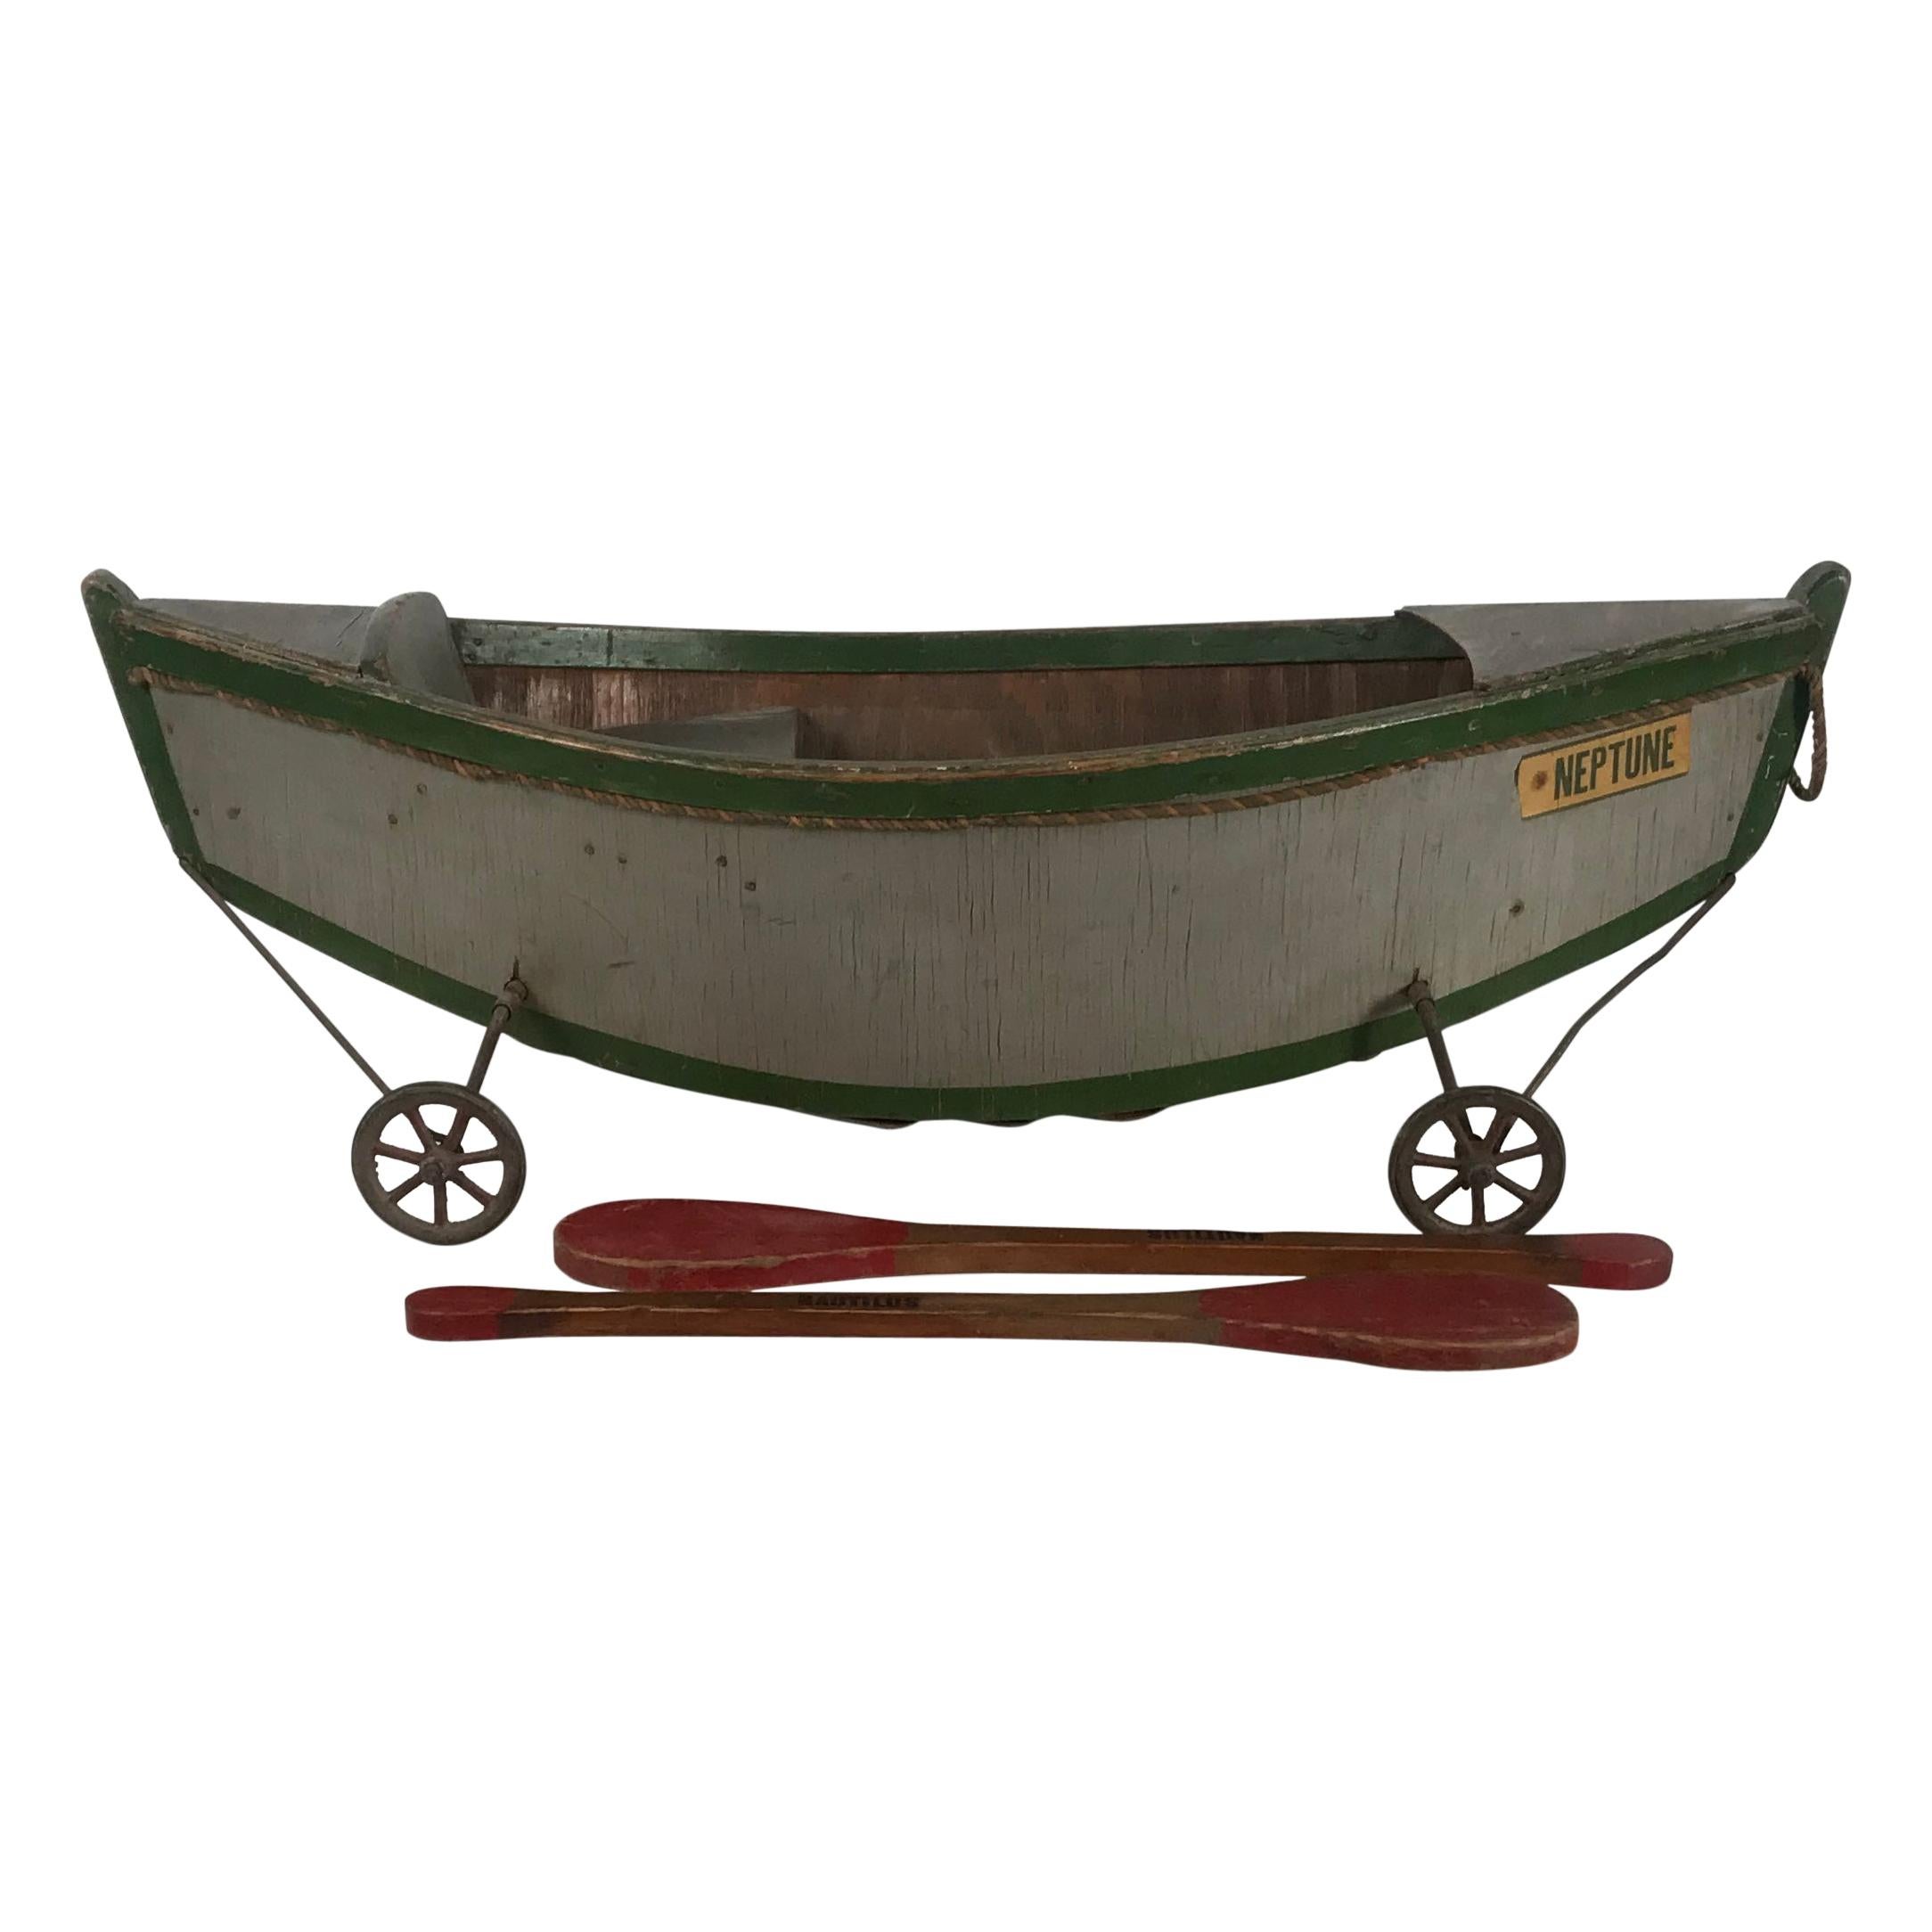 Raro barco de juguete antiguo de madera para niños de Nautilus Toy Co. Londres 